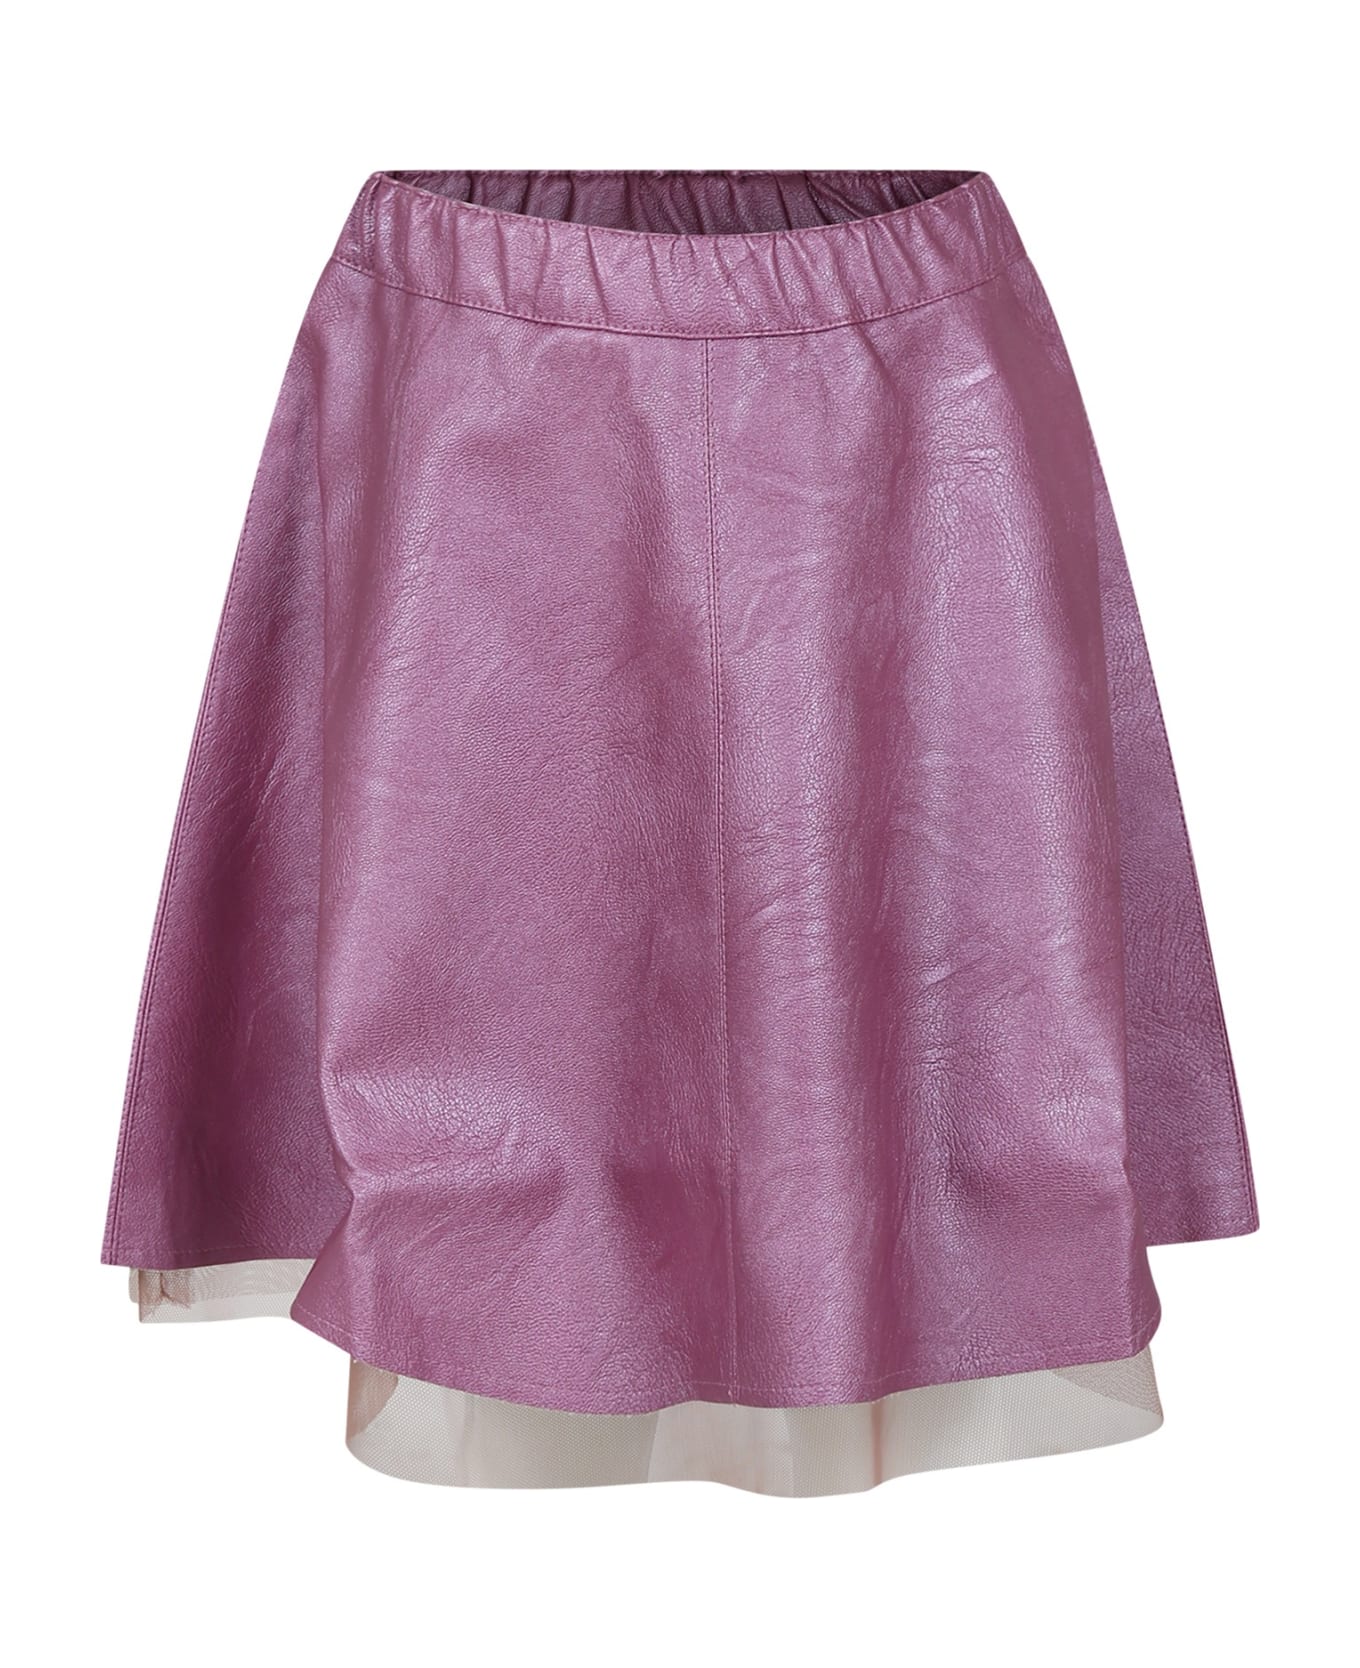 Zhoe & Tobiah Fuchsia Skirt For Girl - Fuchsia